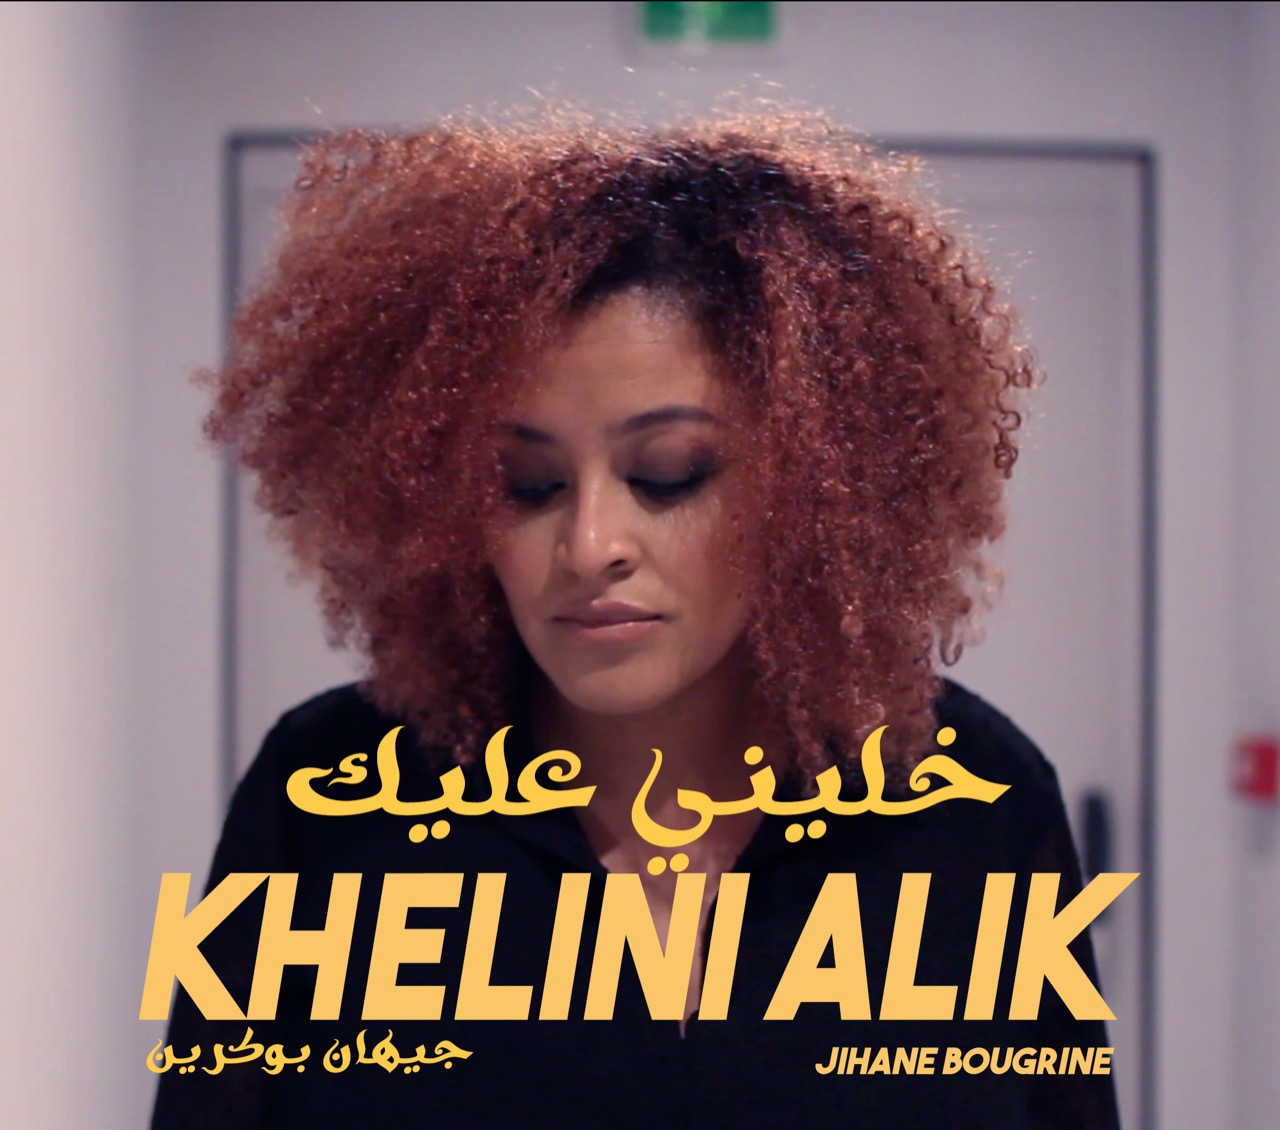 الفنانة المغربيّة جيهان بوكرين تُطلق أغنيتها الجديدة 